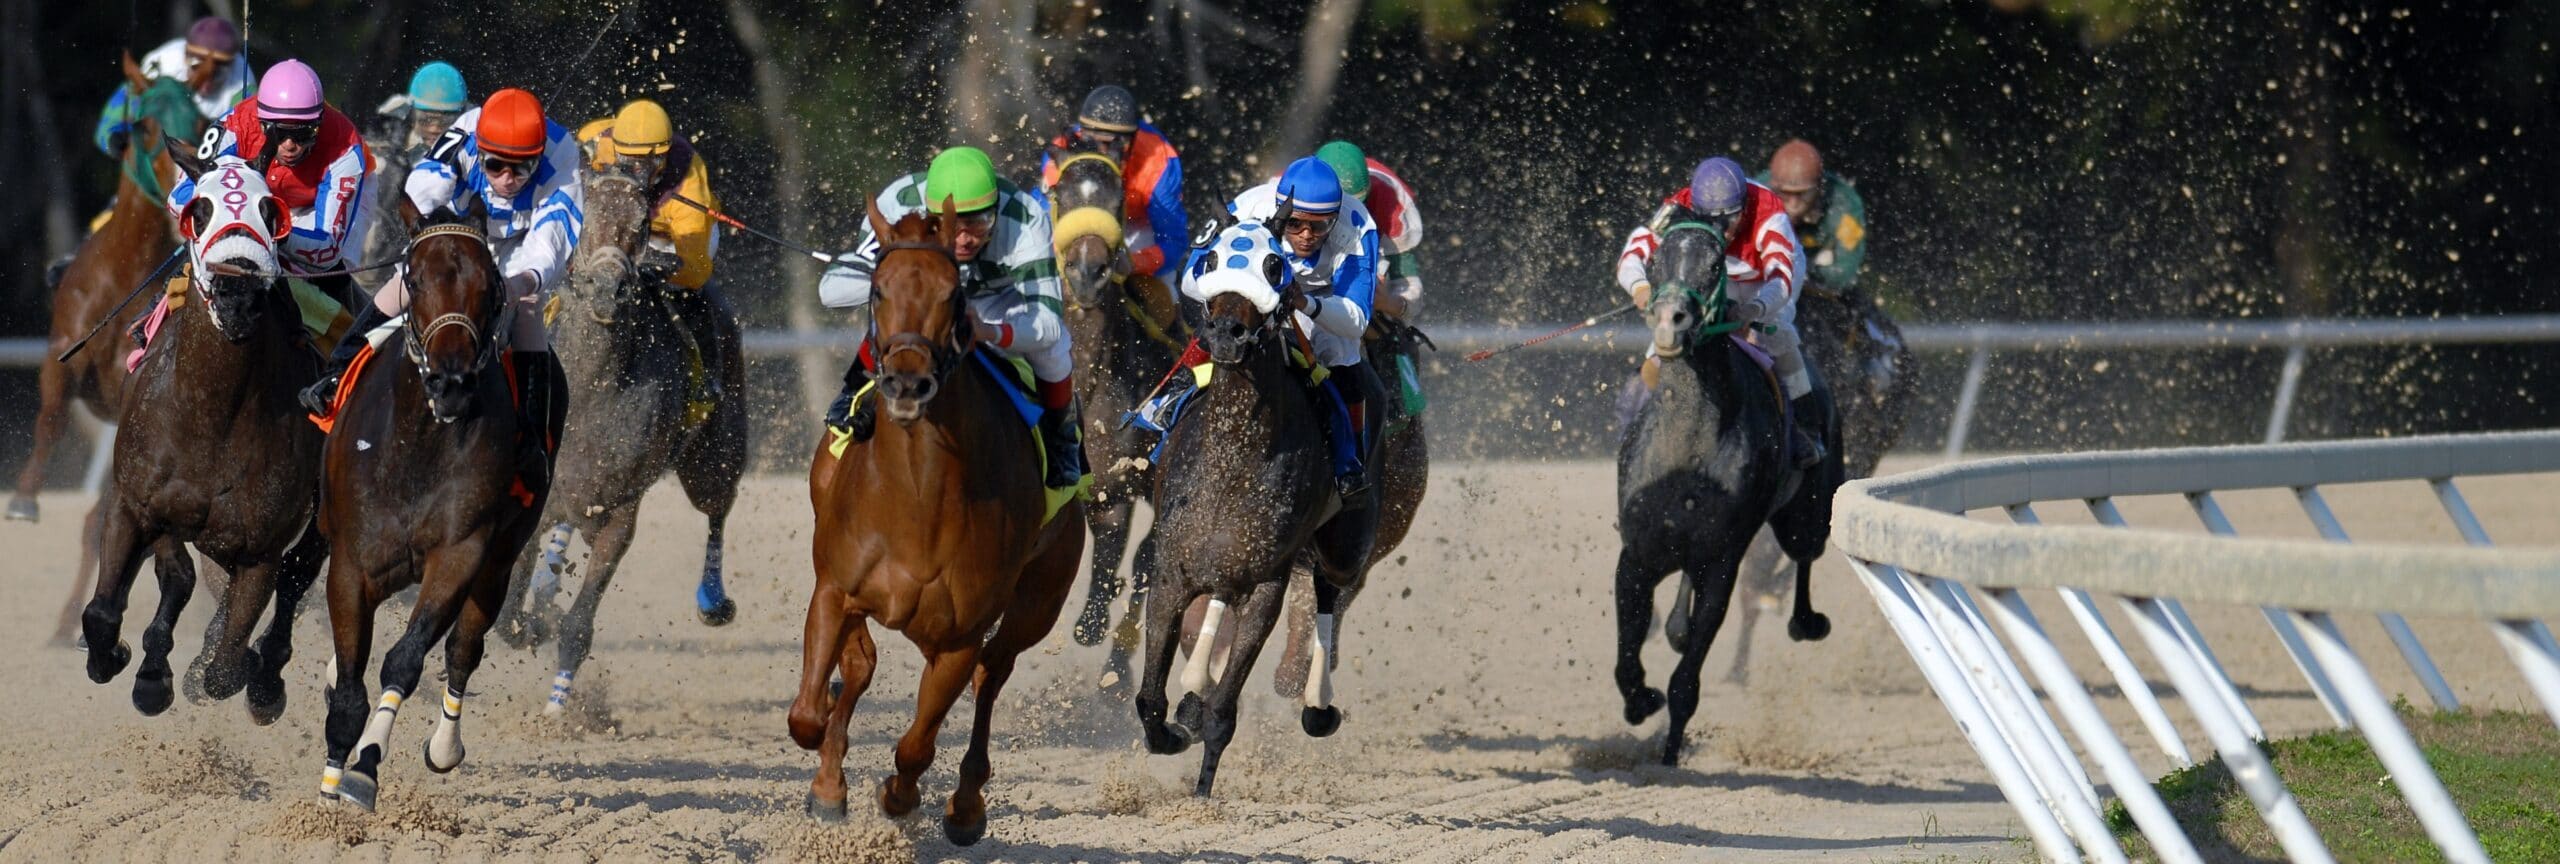 Race horses in full speed